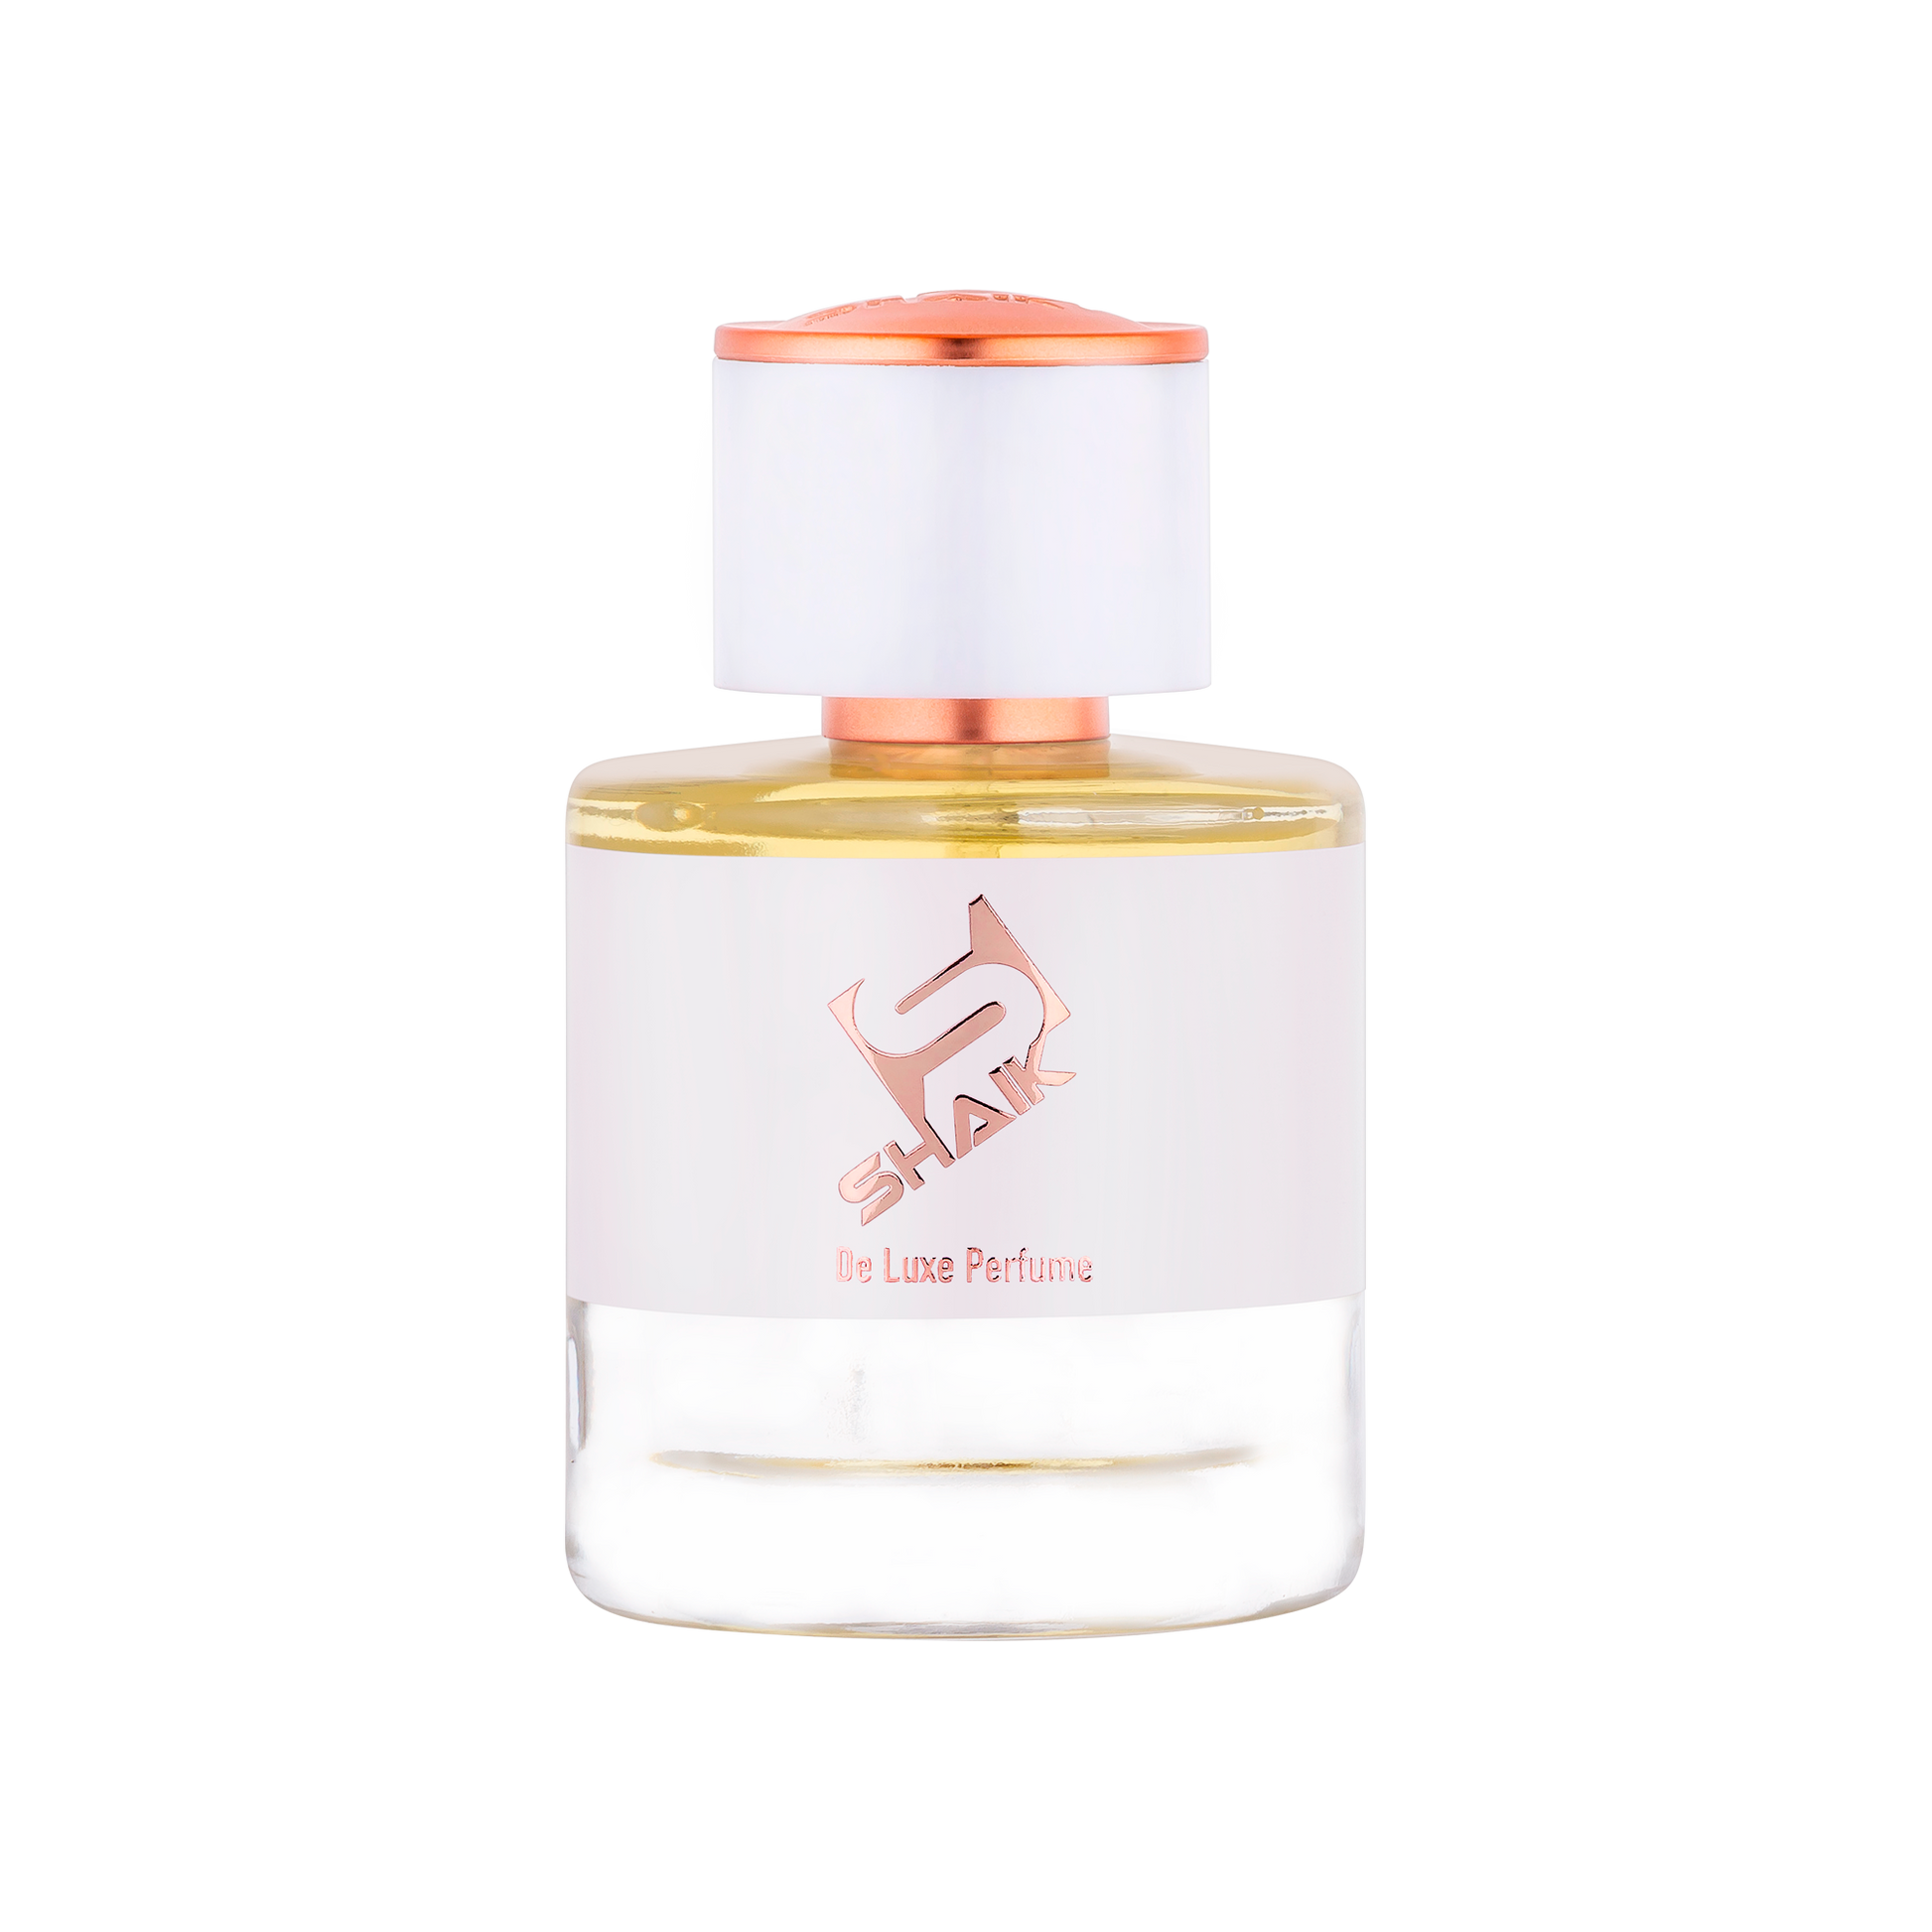 Shaik - 460 - White Floral, Vanilla, Powdery - Shaik Perfume